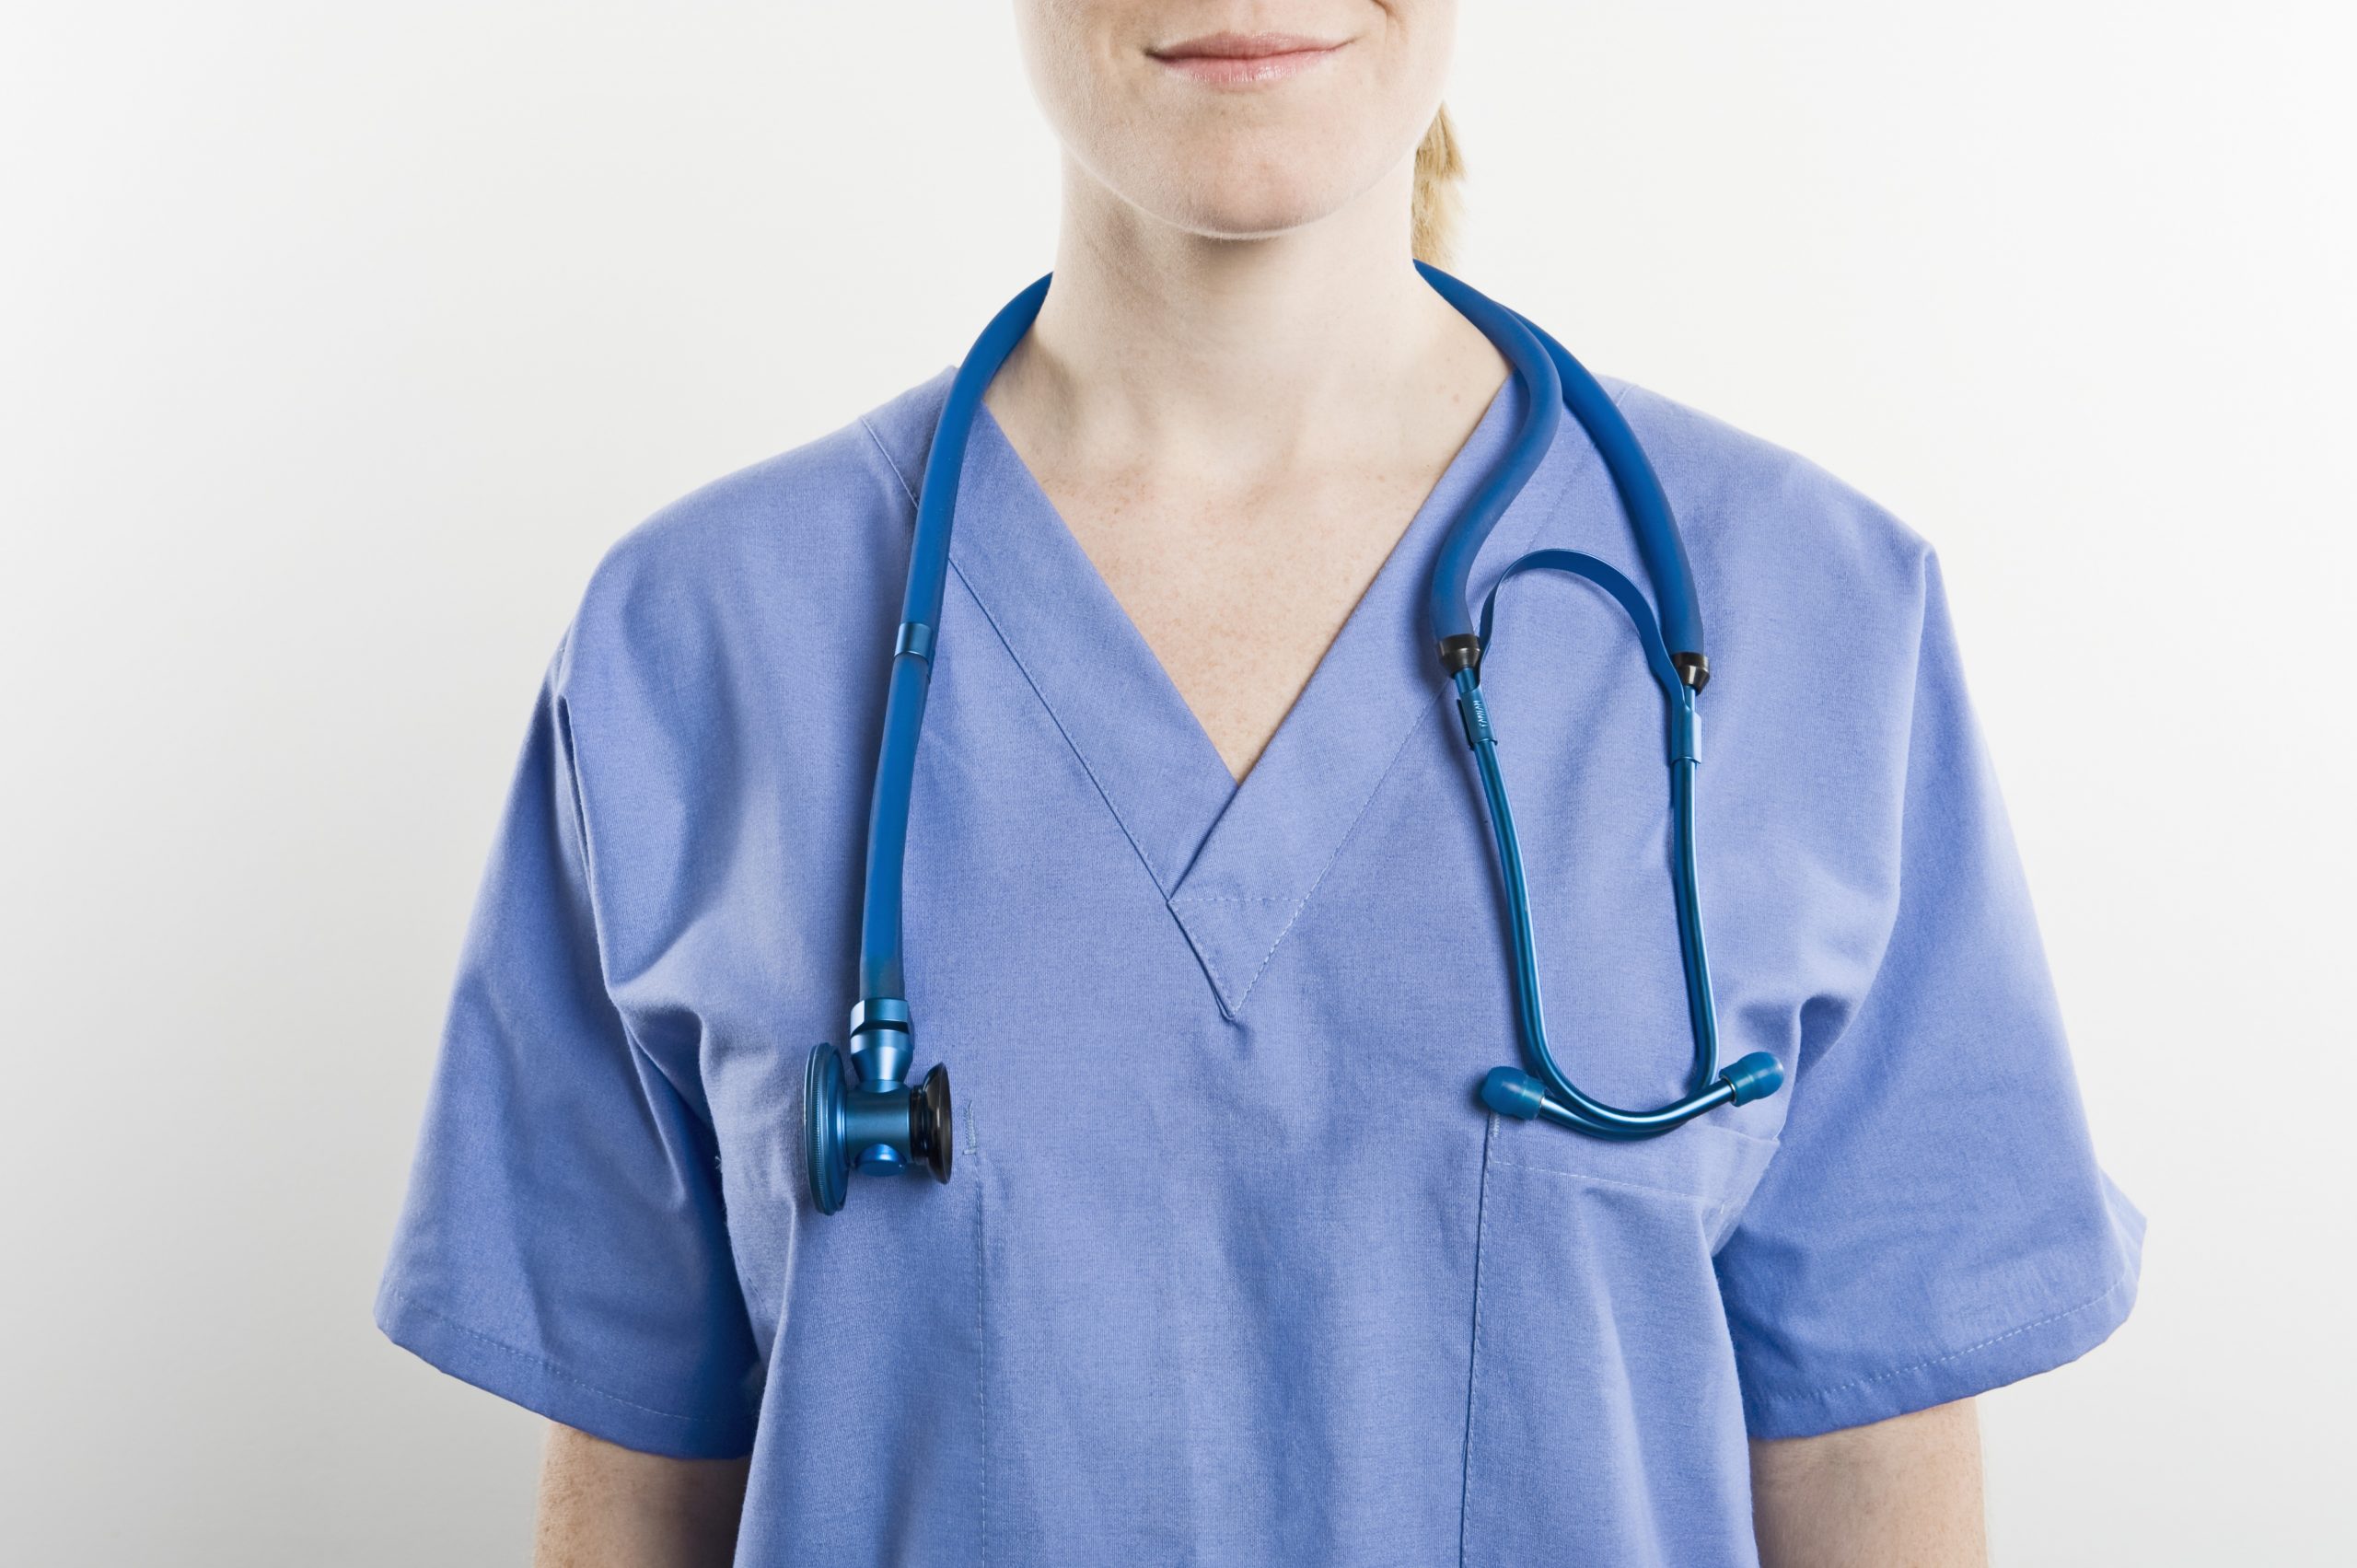 25 Best Nurse Residency Programs Post-BSN